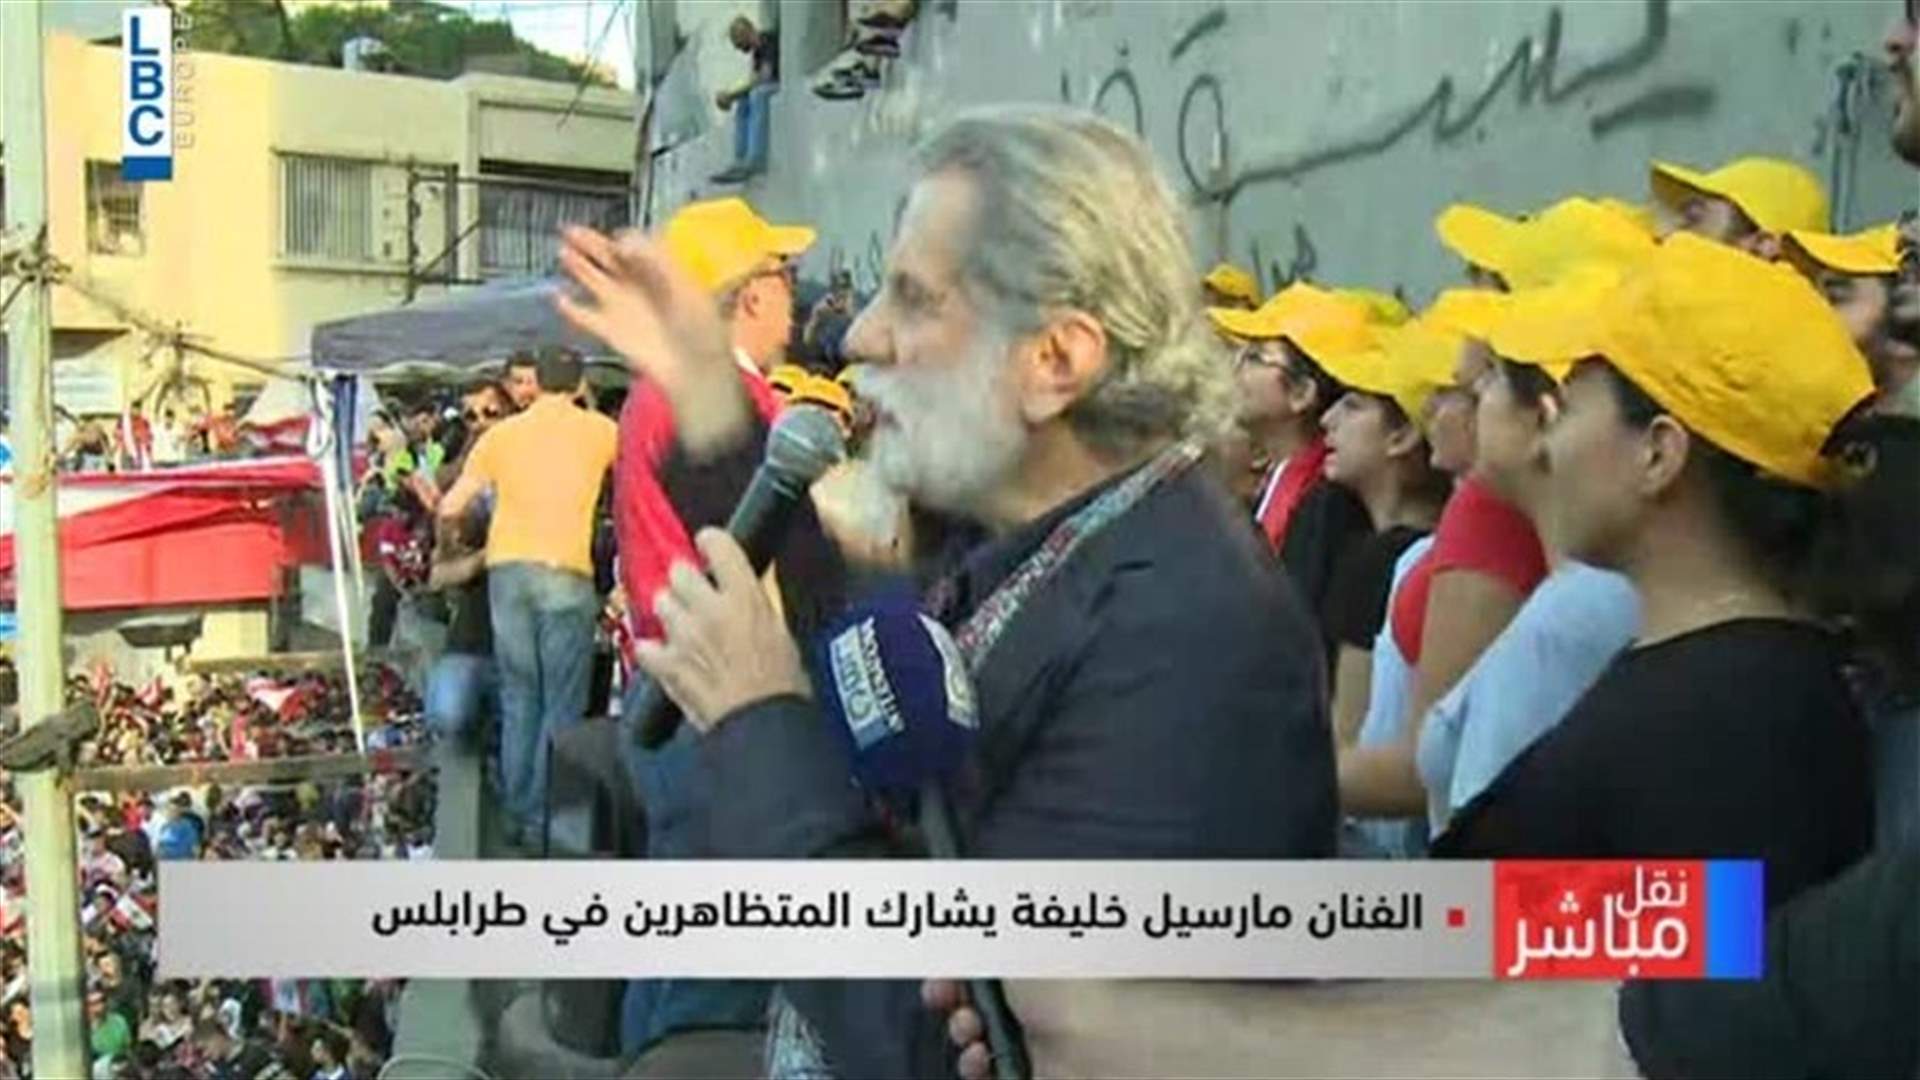 Marcel Khalife joins demonstrators in Tripoli square; sings patriotic songs (Video)